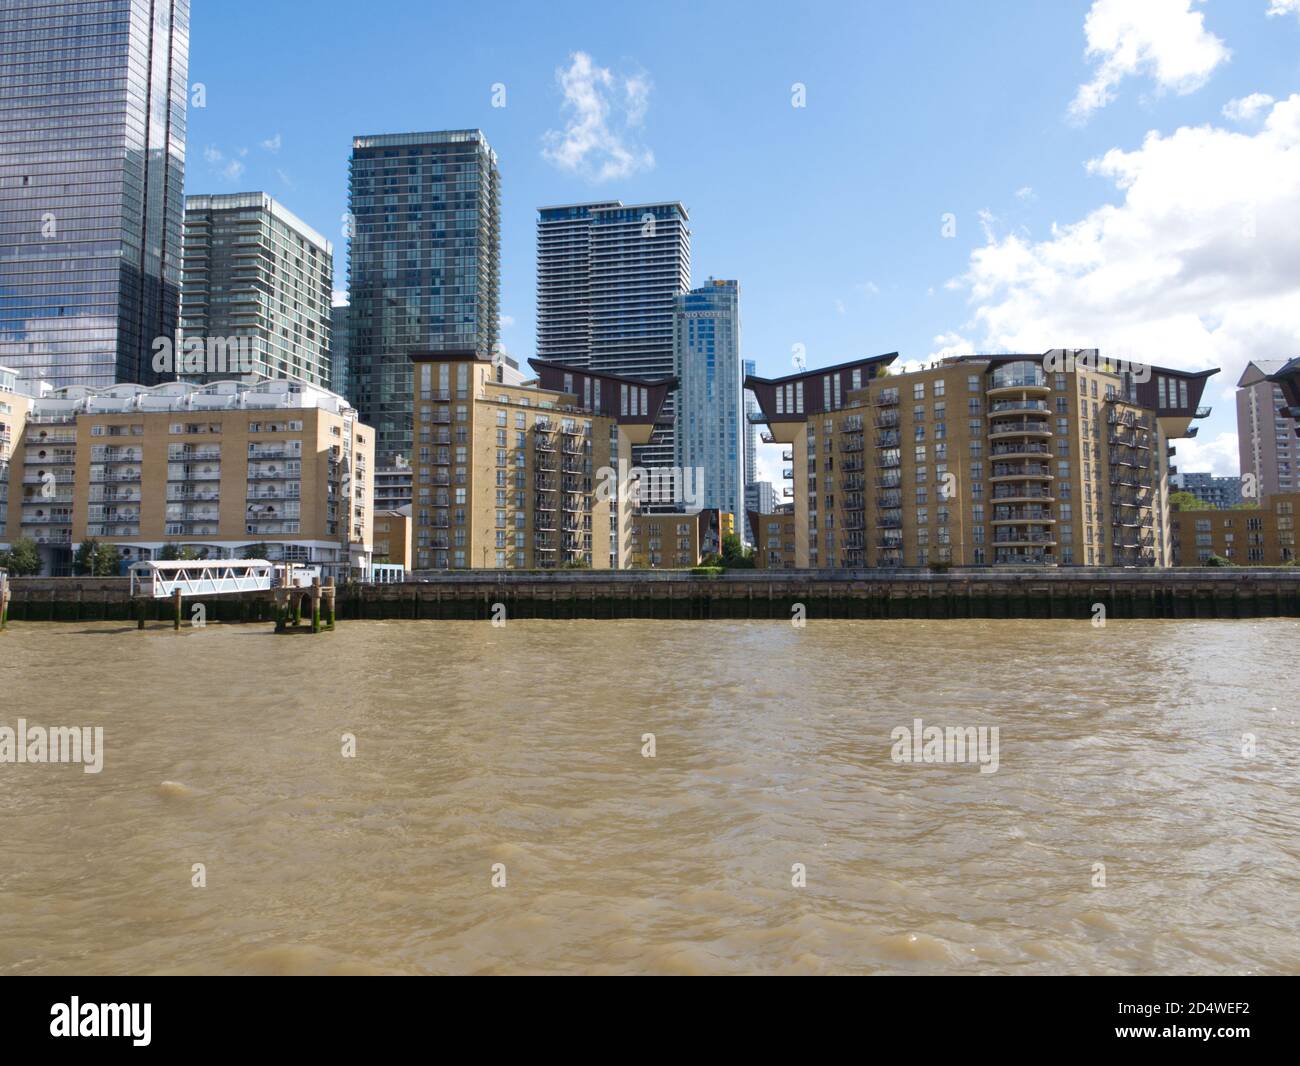 Lo skyline di Canary Wharf, la rigenerazione dei Docklands di una città all'interno di una città. One Canada Square, hotel, uffici, ristoranti, corsi d'acqua, ferrovia leggera. Foto Stock